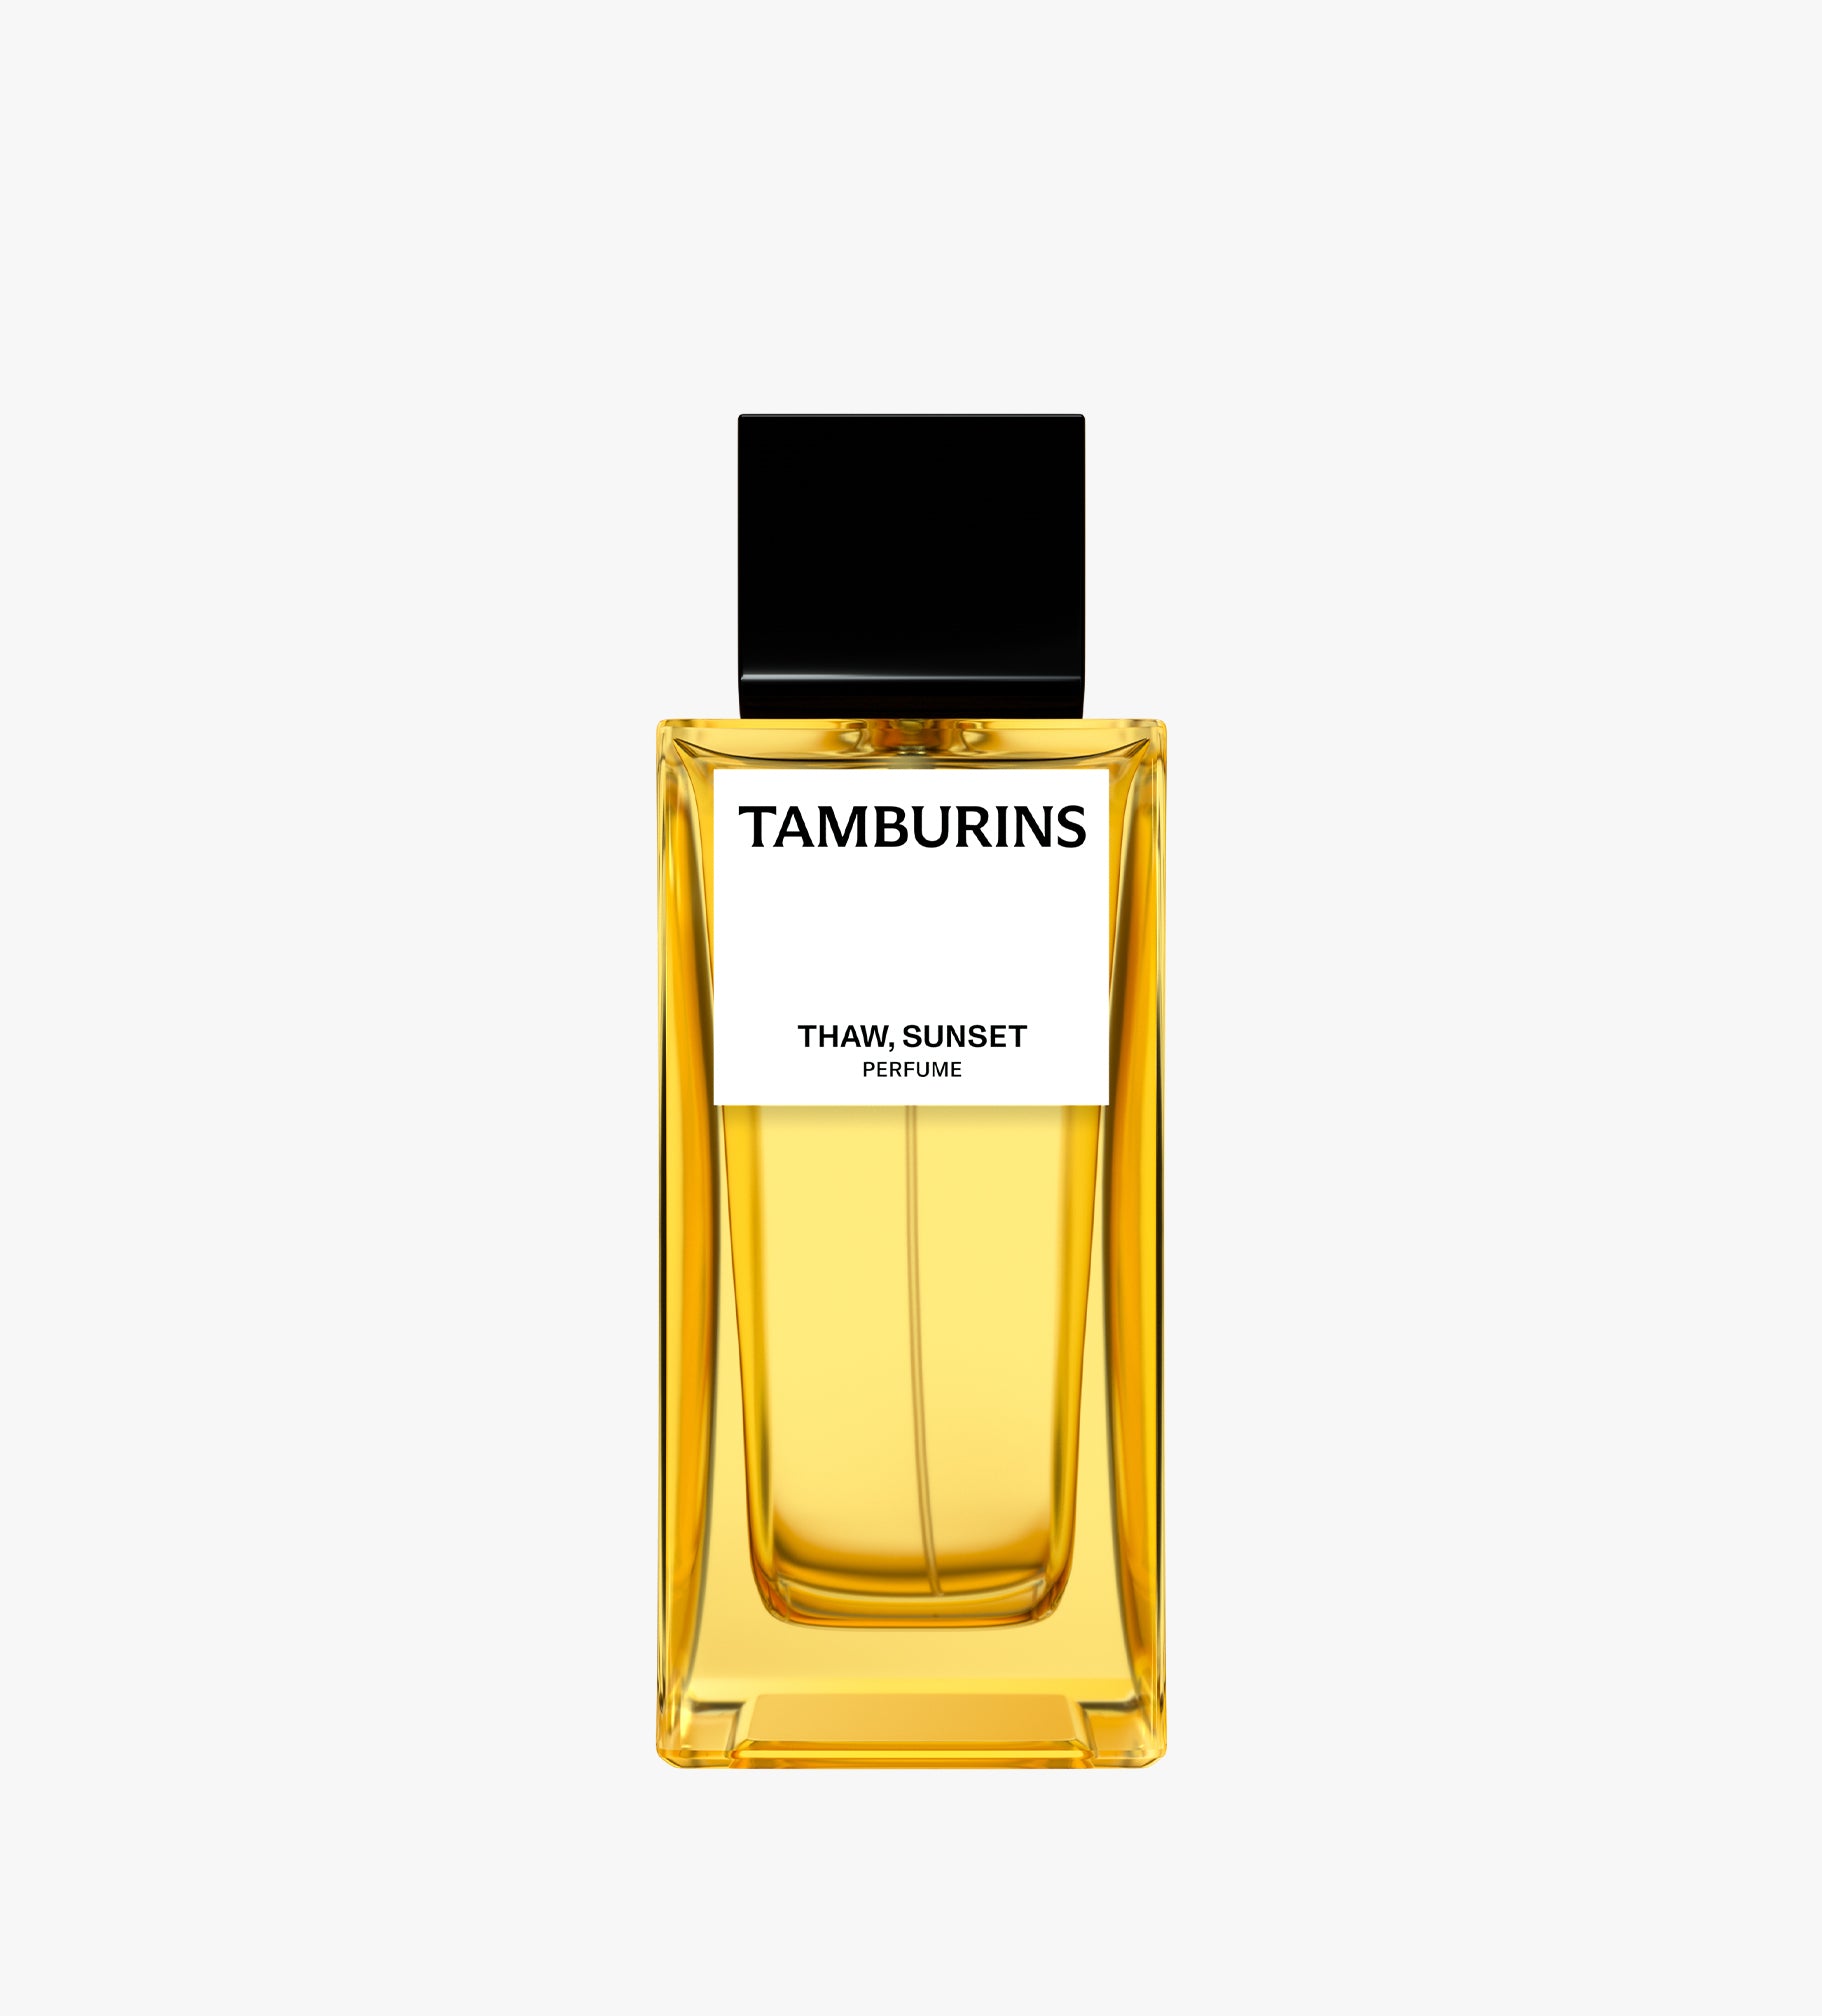 Tamburins Perfume - Thaw Sunset